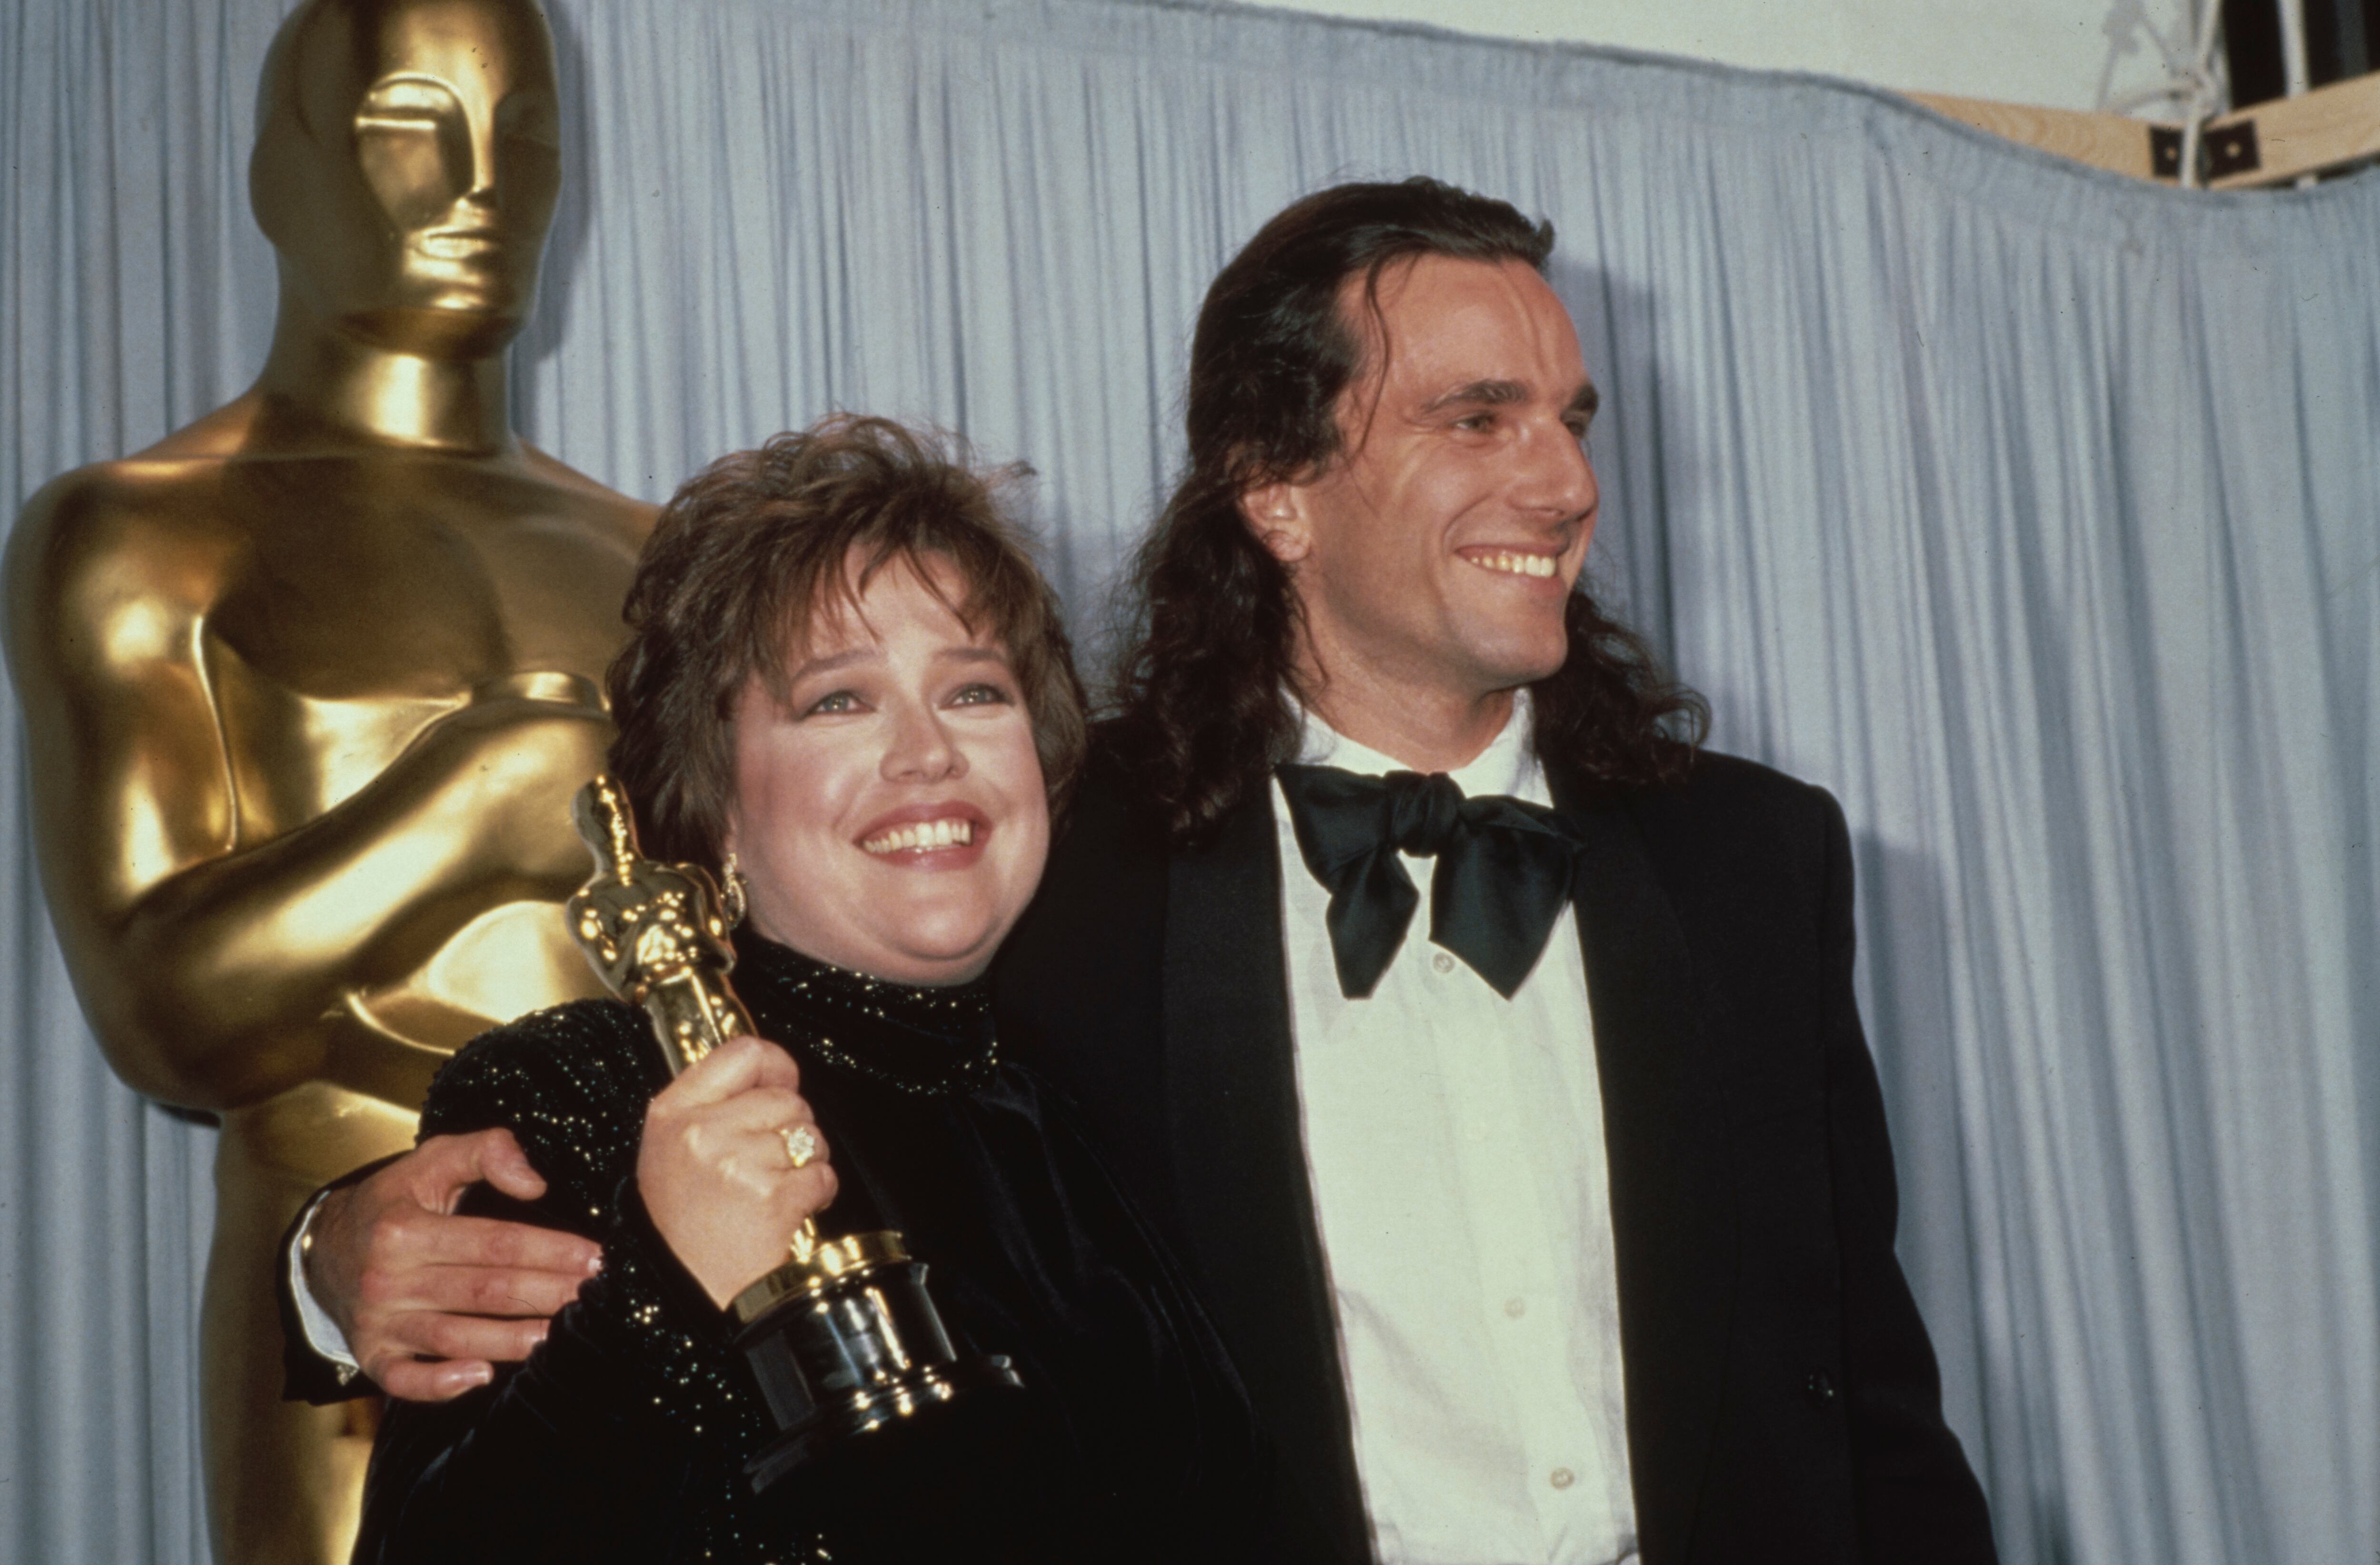  Kathy Bates muestra el Oscar ganado por 'Misery' junto al actor Daniel Day-Lewis en 1991.